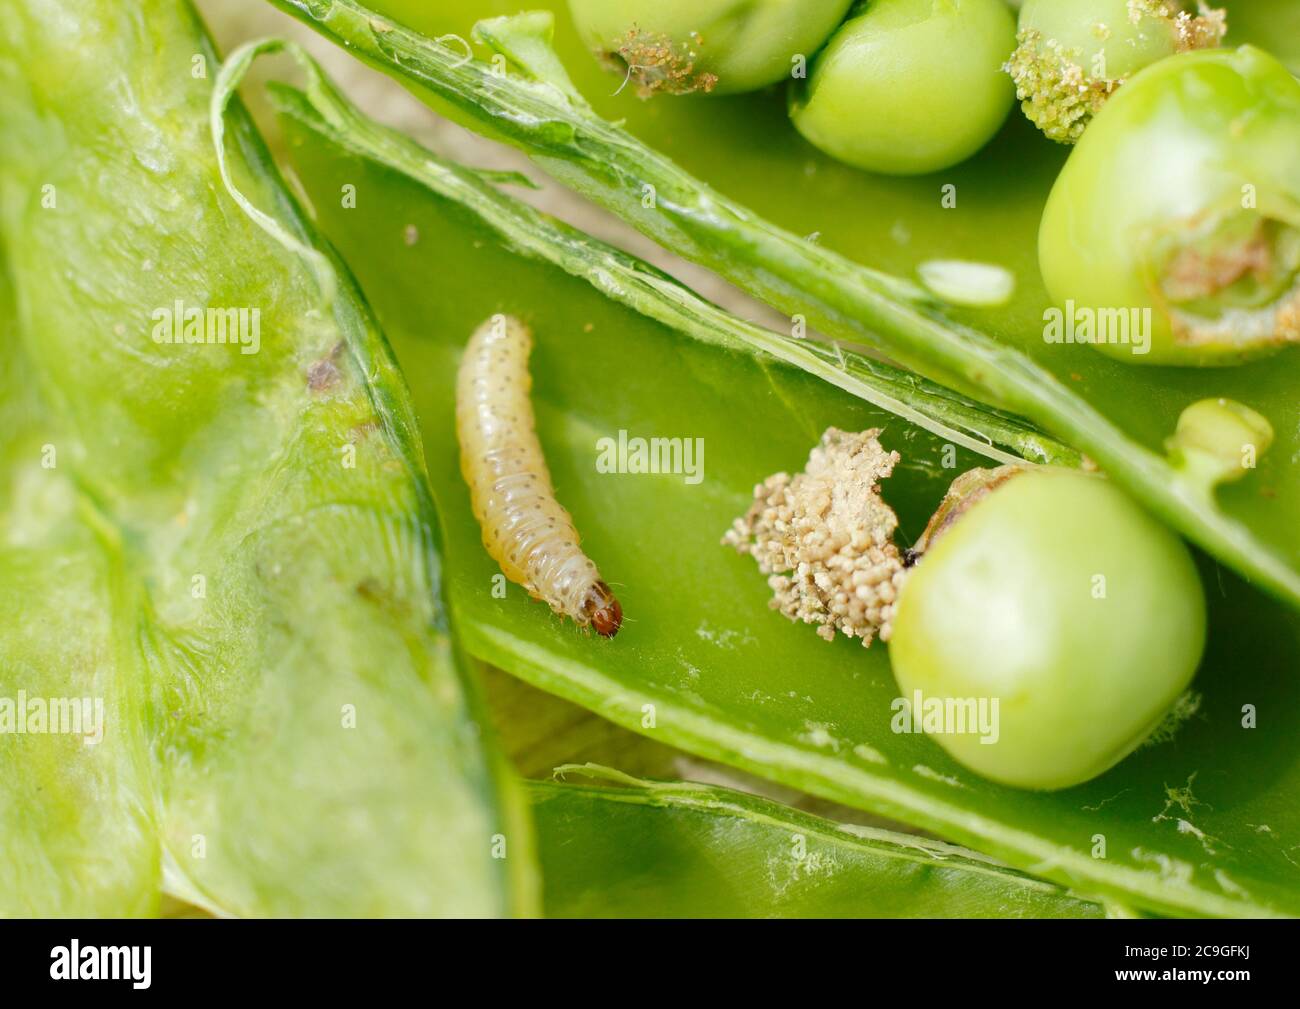 Cydia nigricana larves et frass. Larves de la papule de pois dans la gousse avec excréments et dommages visibles aux pois du jardin. ROYAUME-UNI Banque D'Images